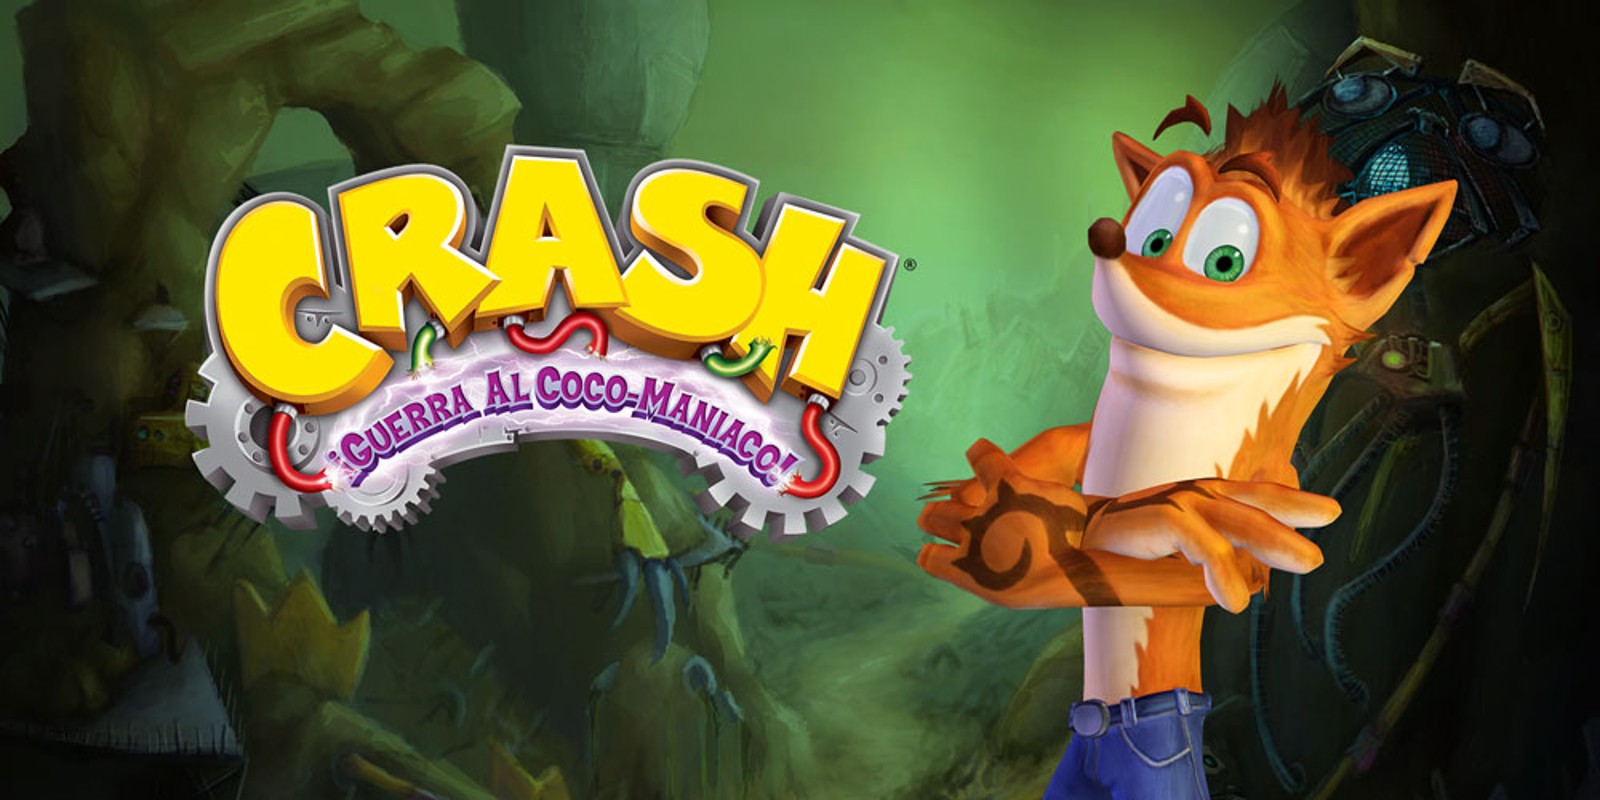 Crash: Guerra al Coco-Maniaco